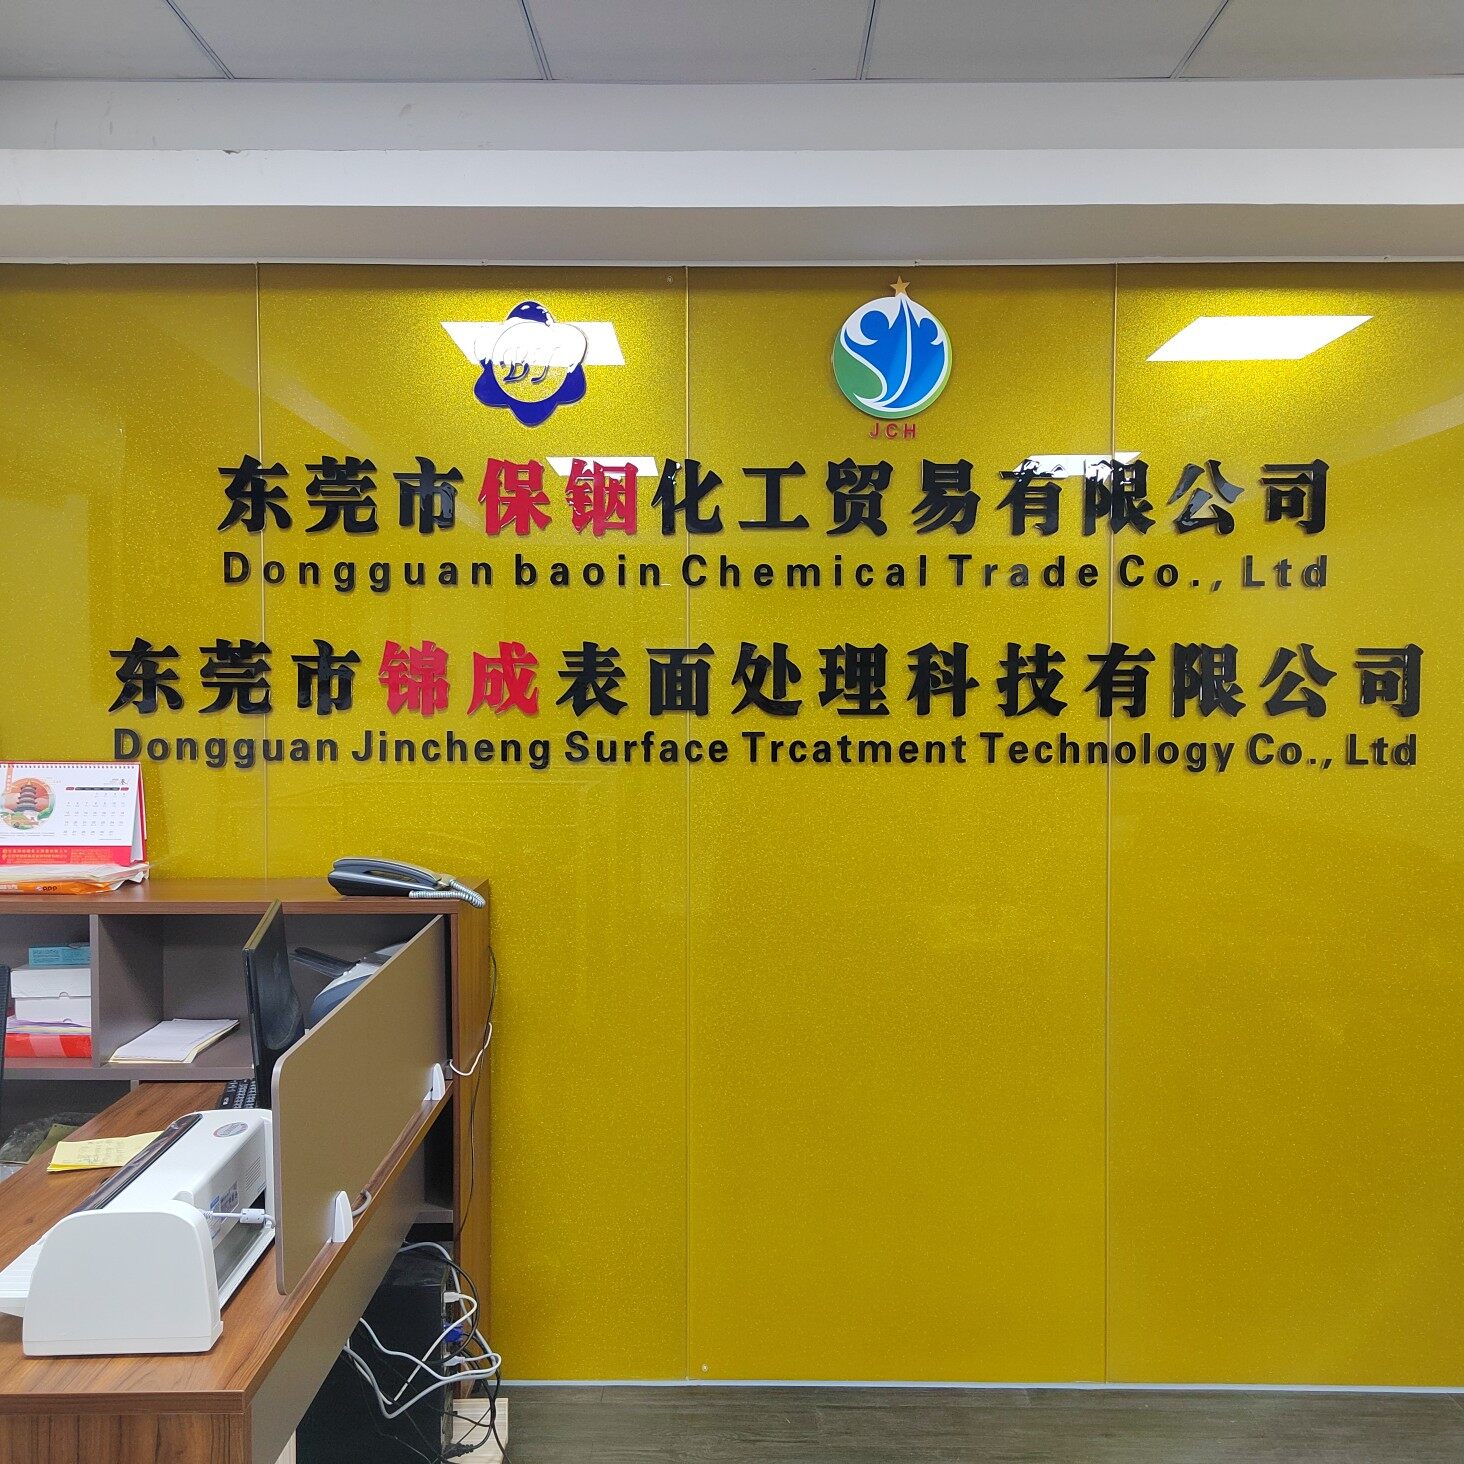 东莞市保铟化工贸易有限公司logo